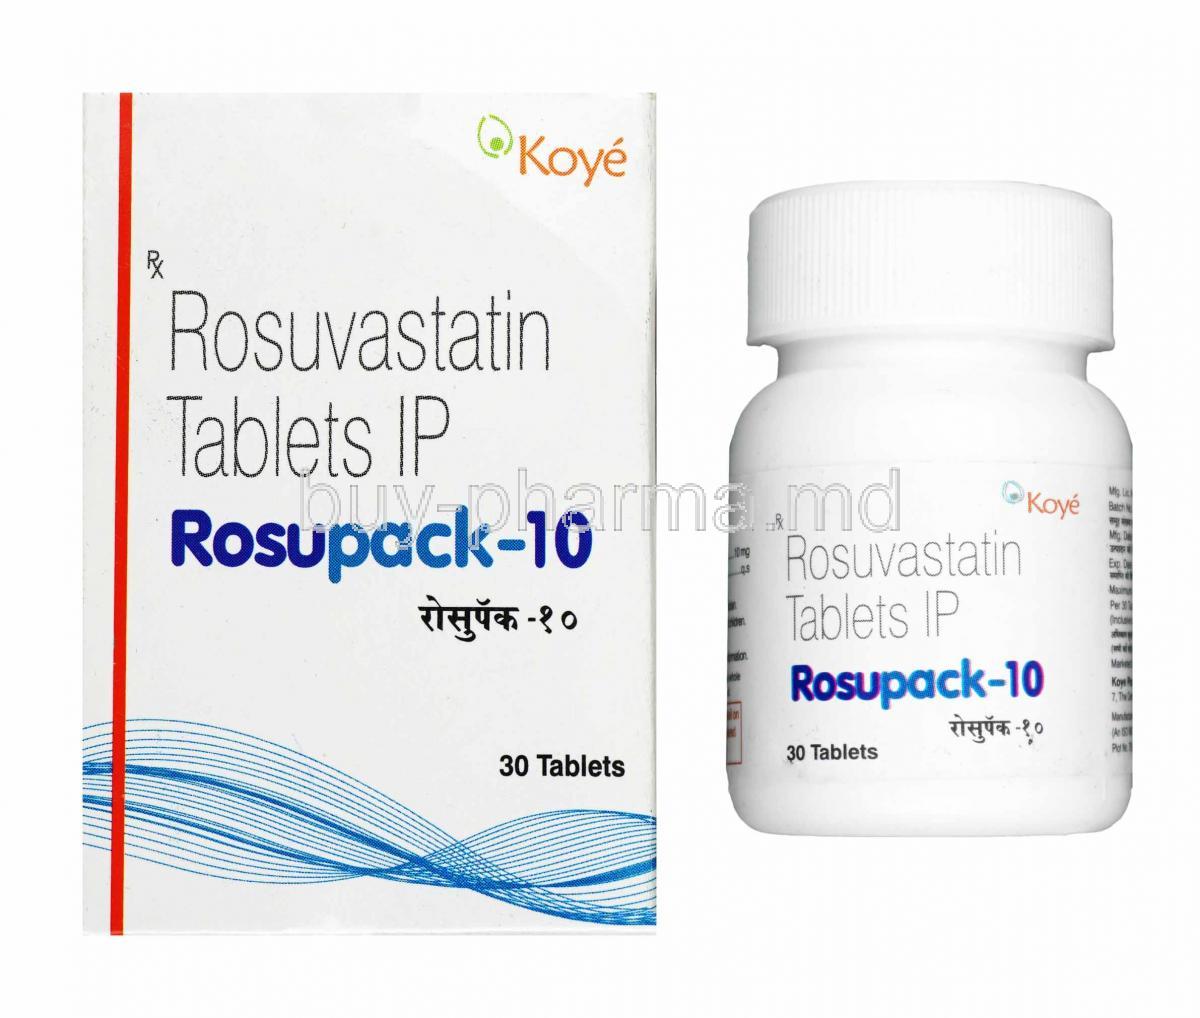 Rosupack, Rosuvastatin 10mg box and tablets